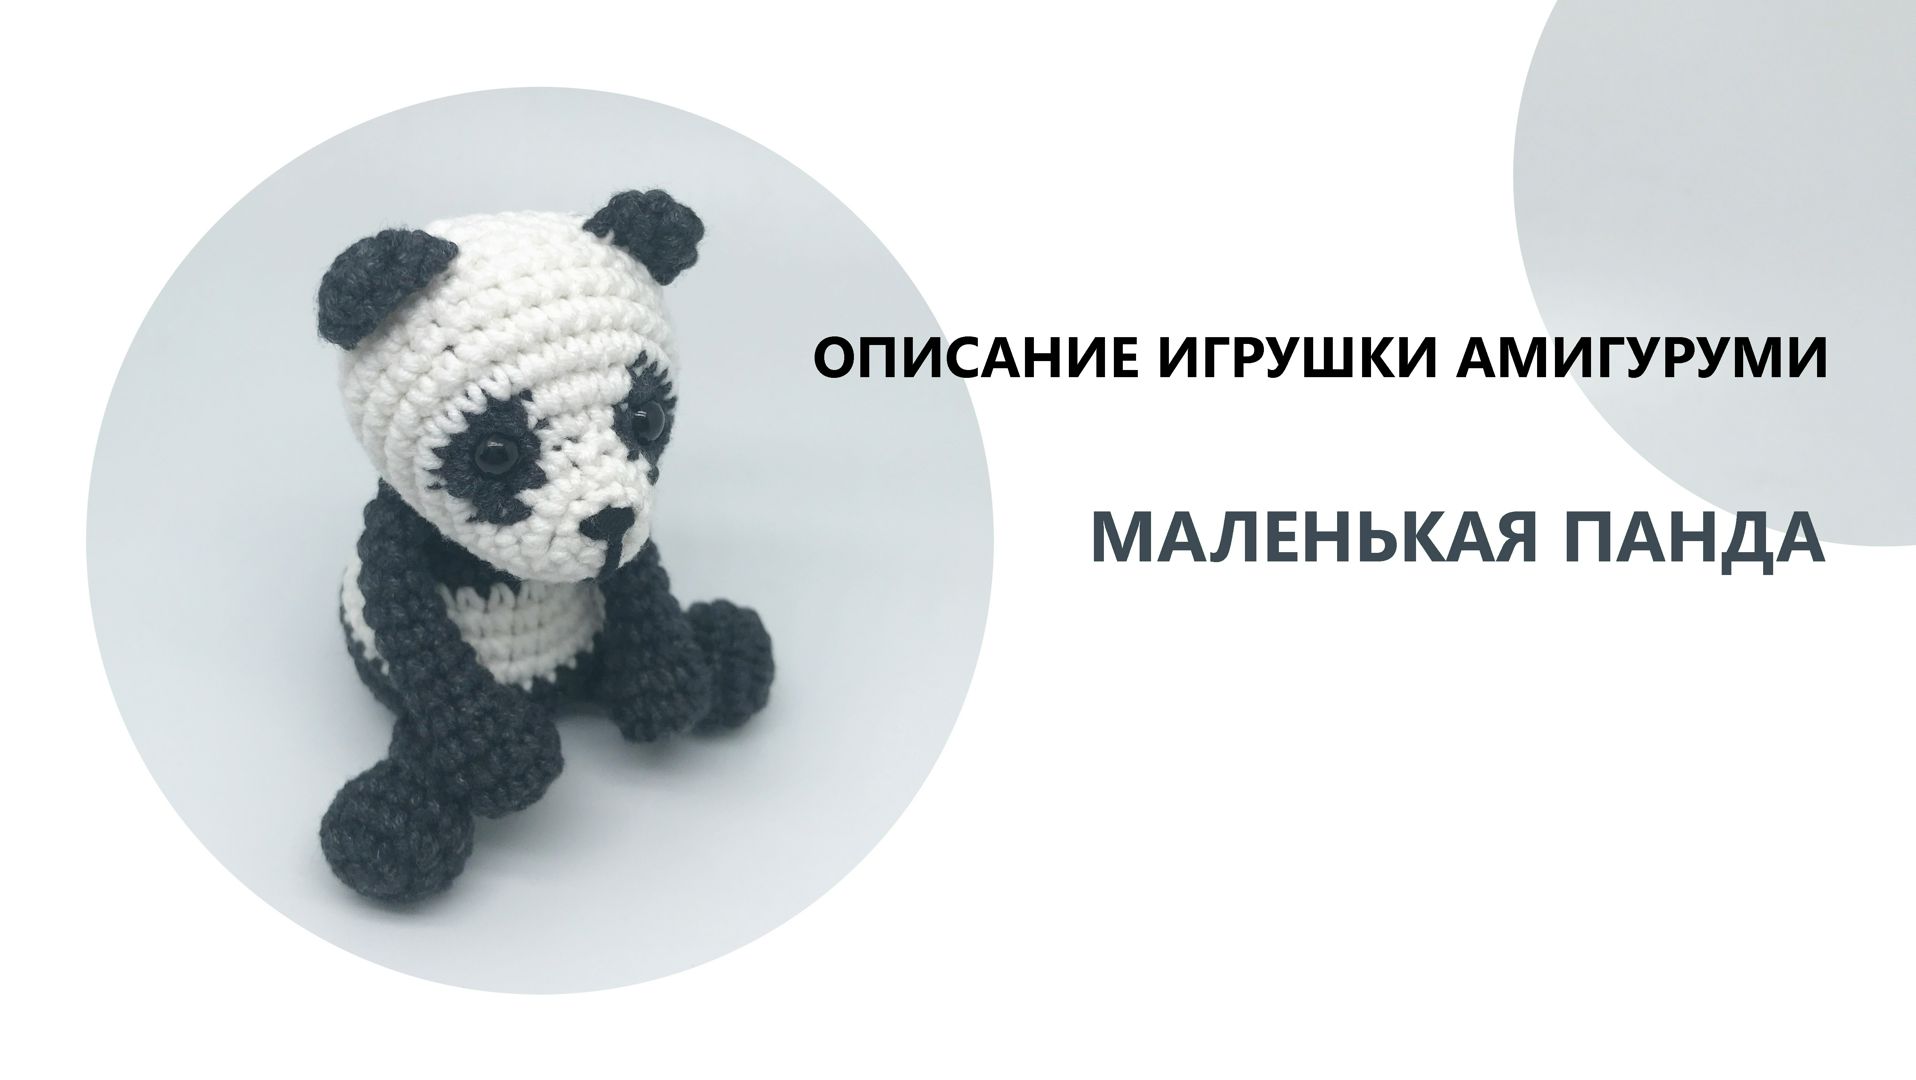 Милая панда крючком: легкая схема вязания с описанием